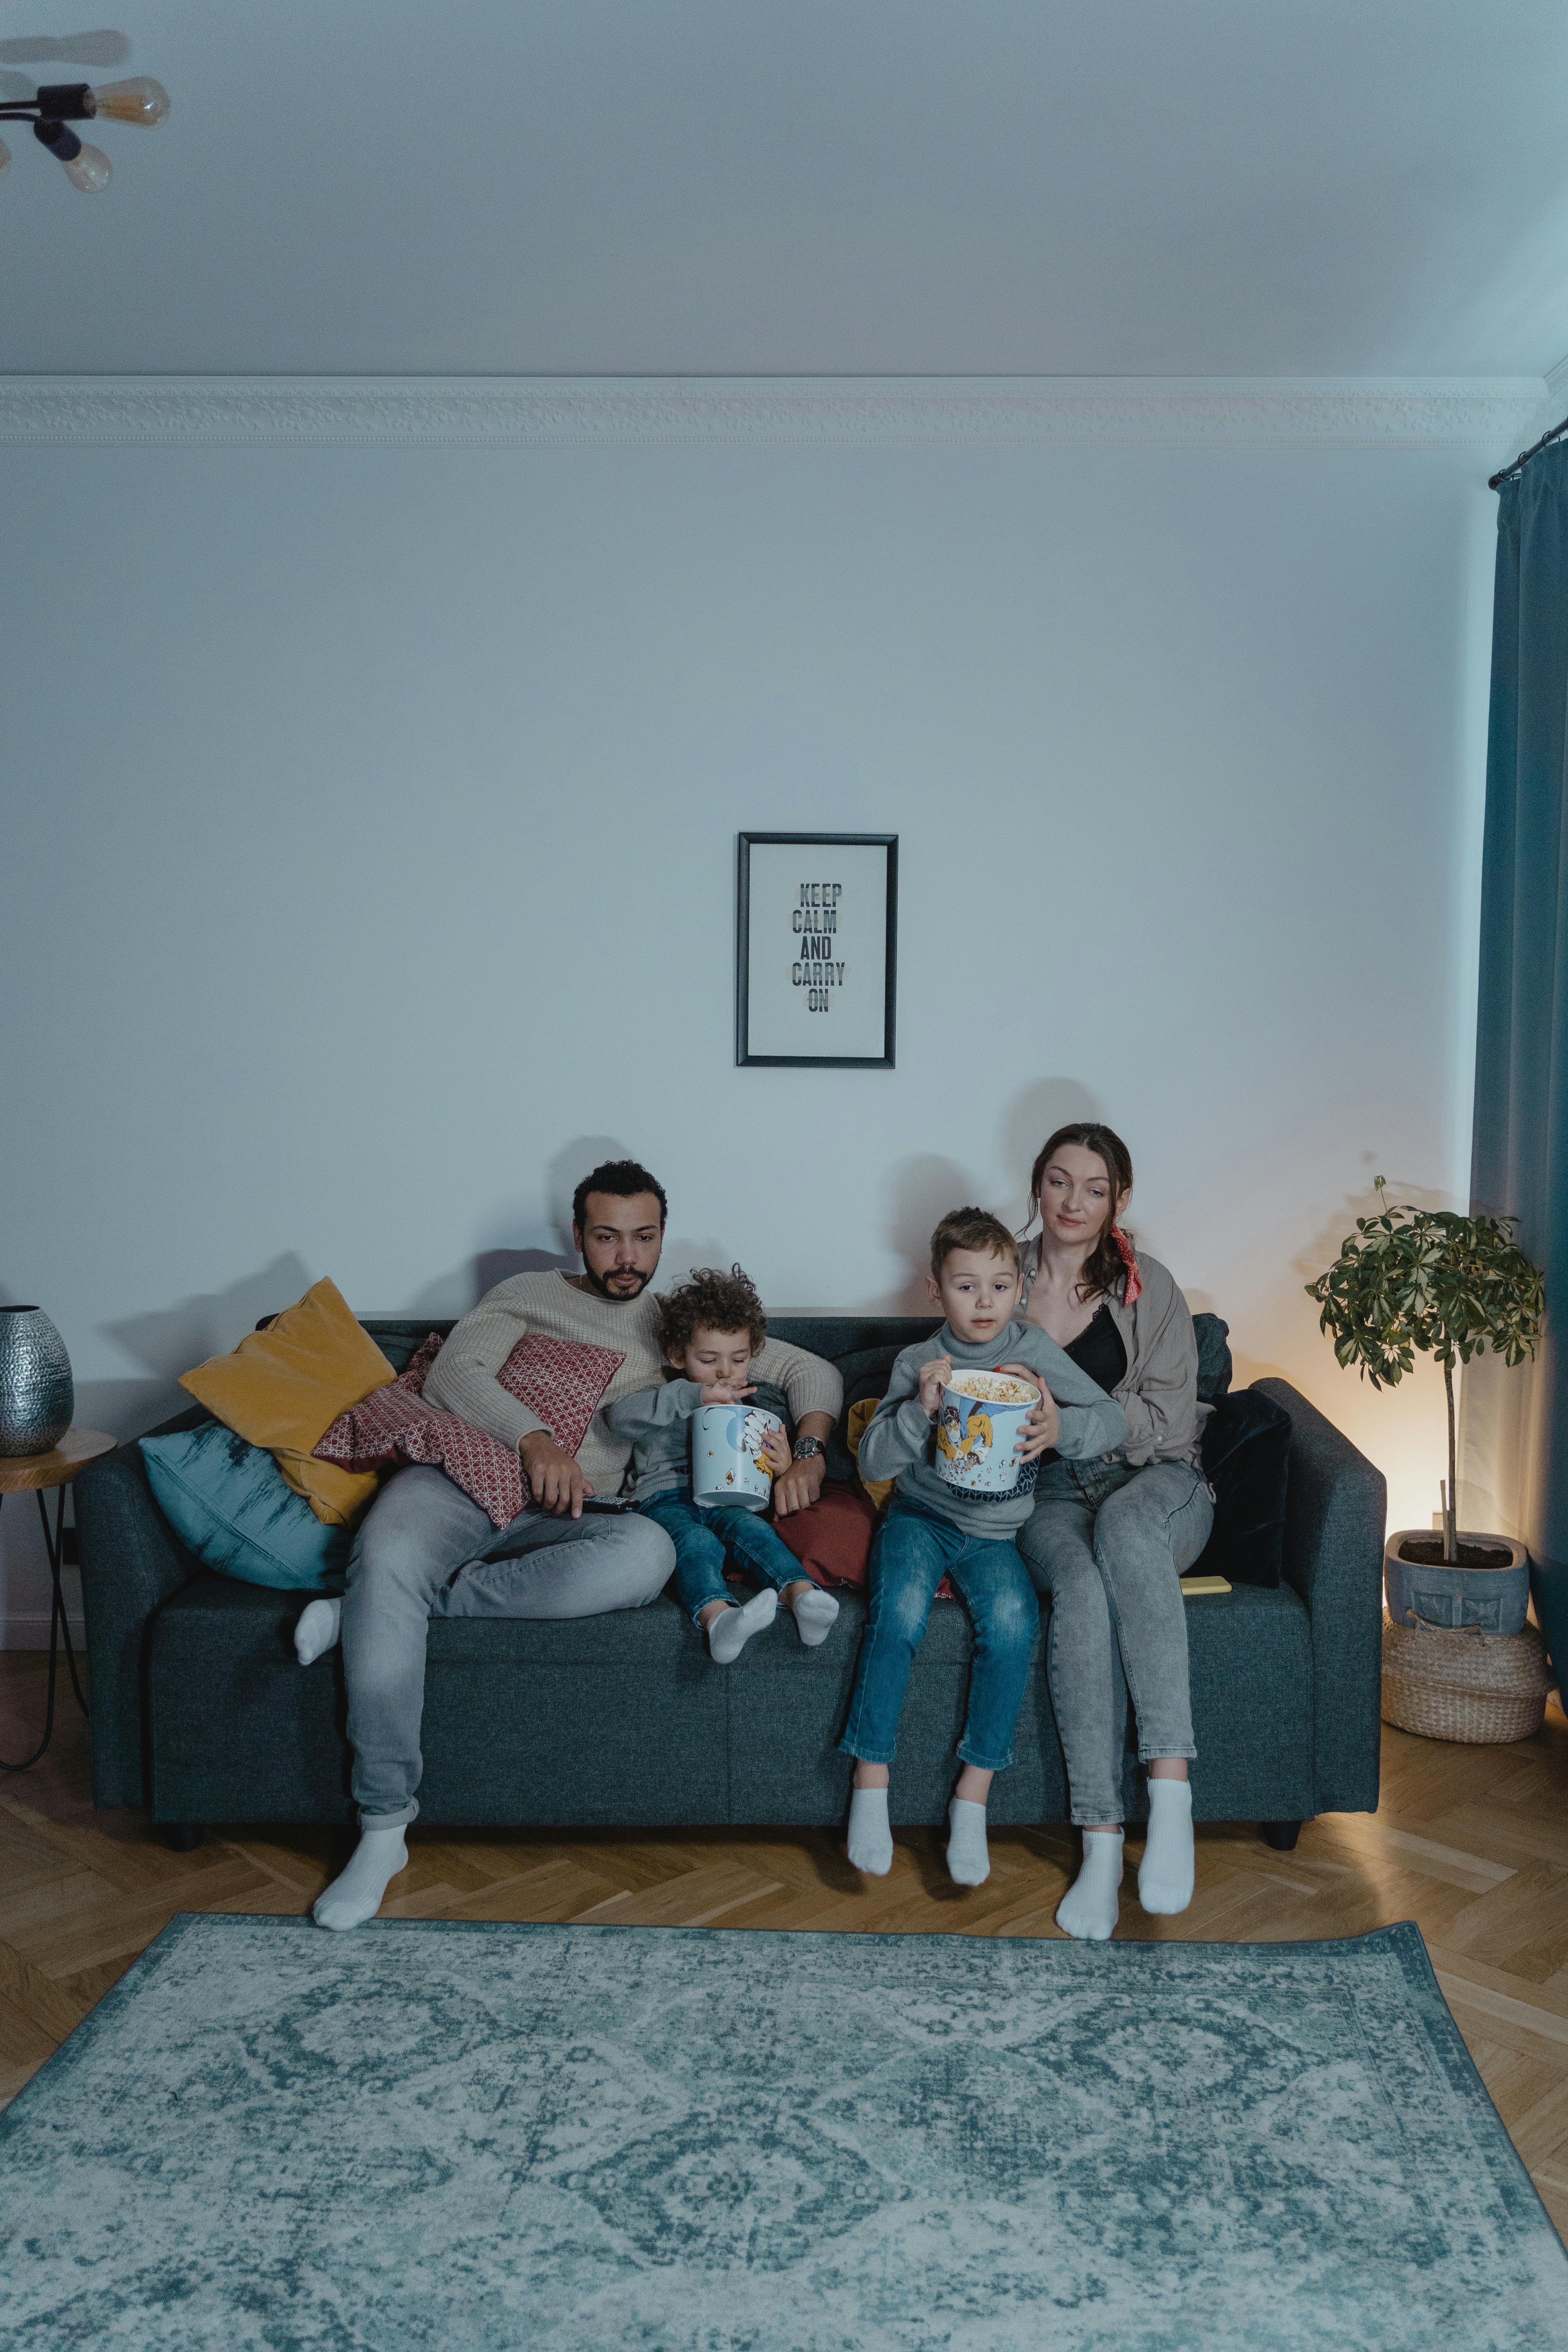 Un couple assis sur le canapé avec ses enfants | Source : Pexels